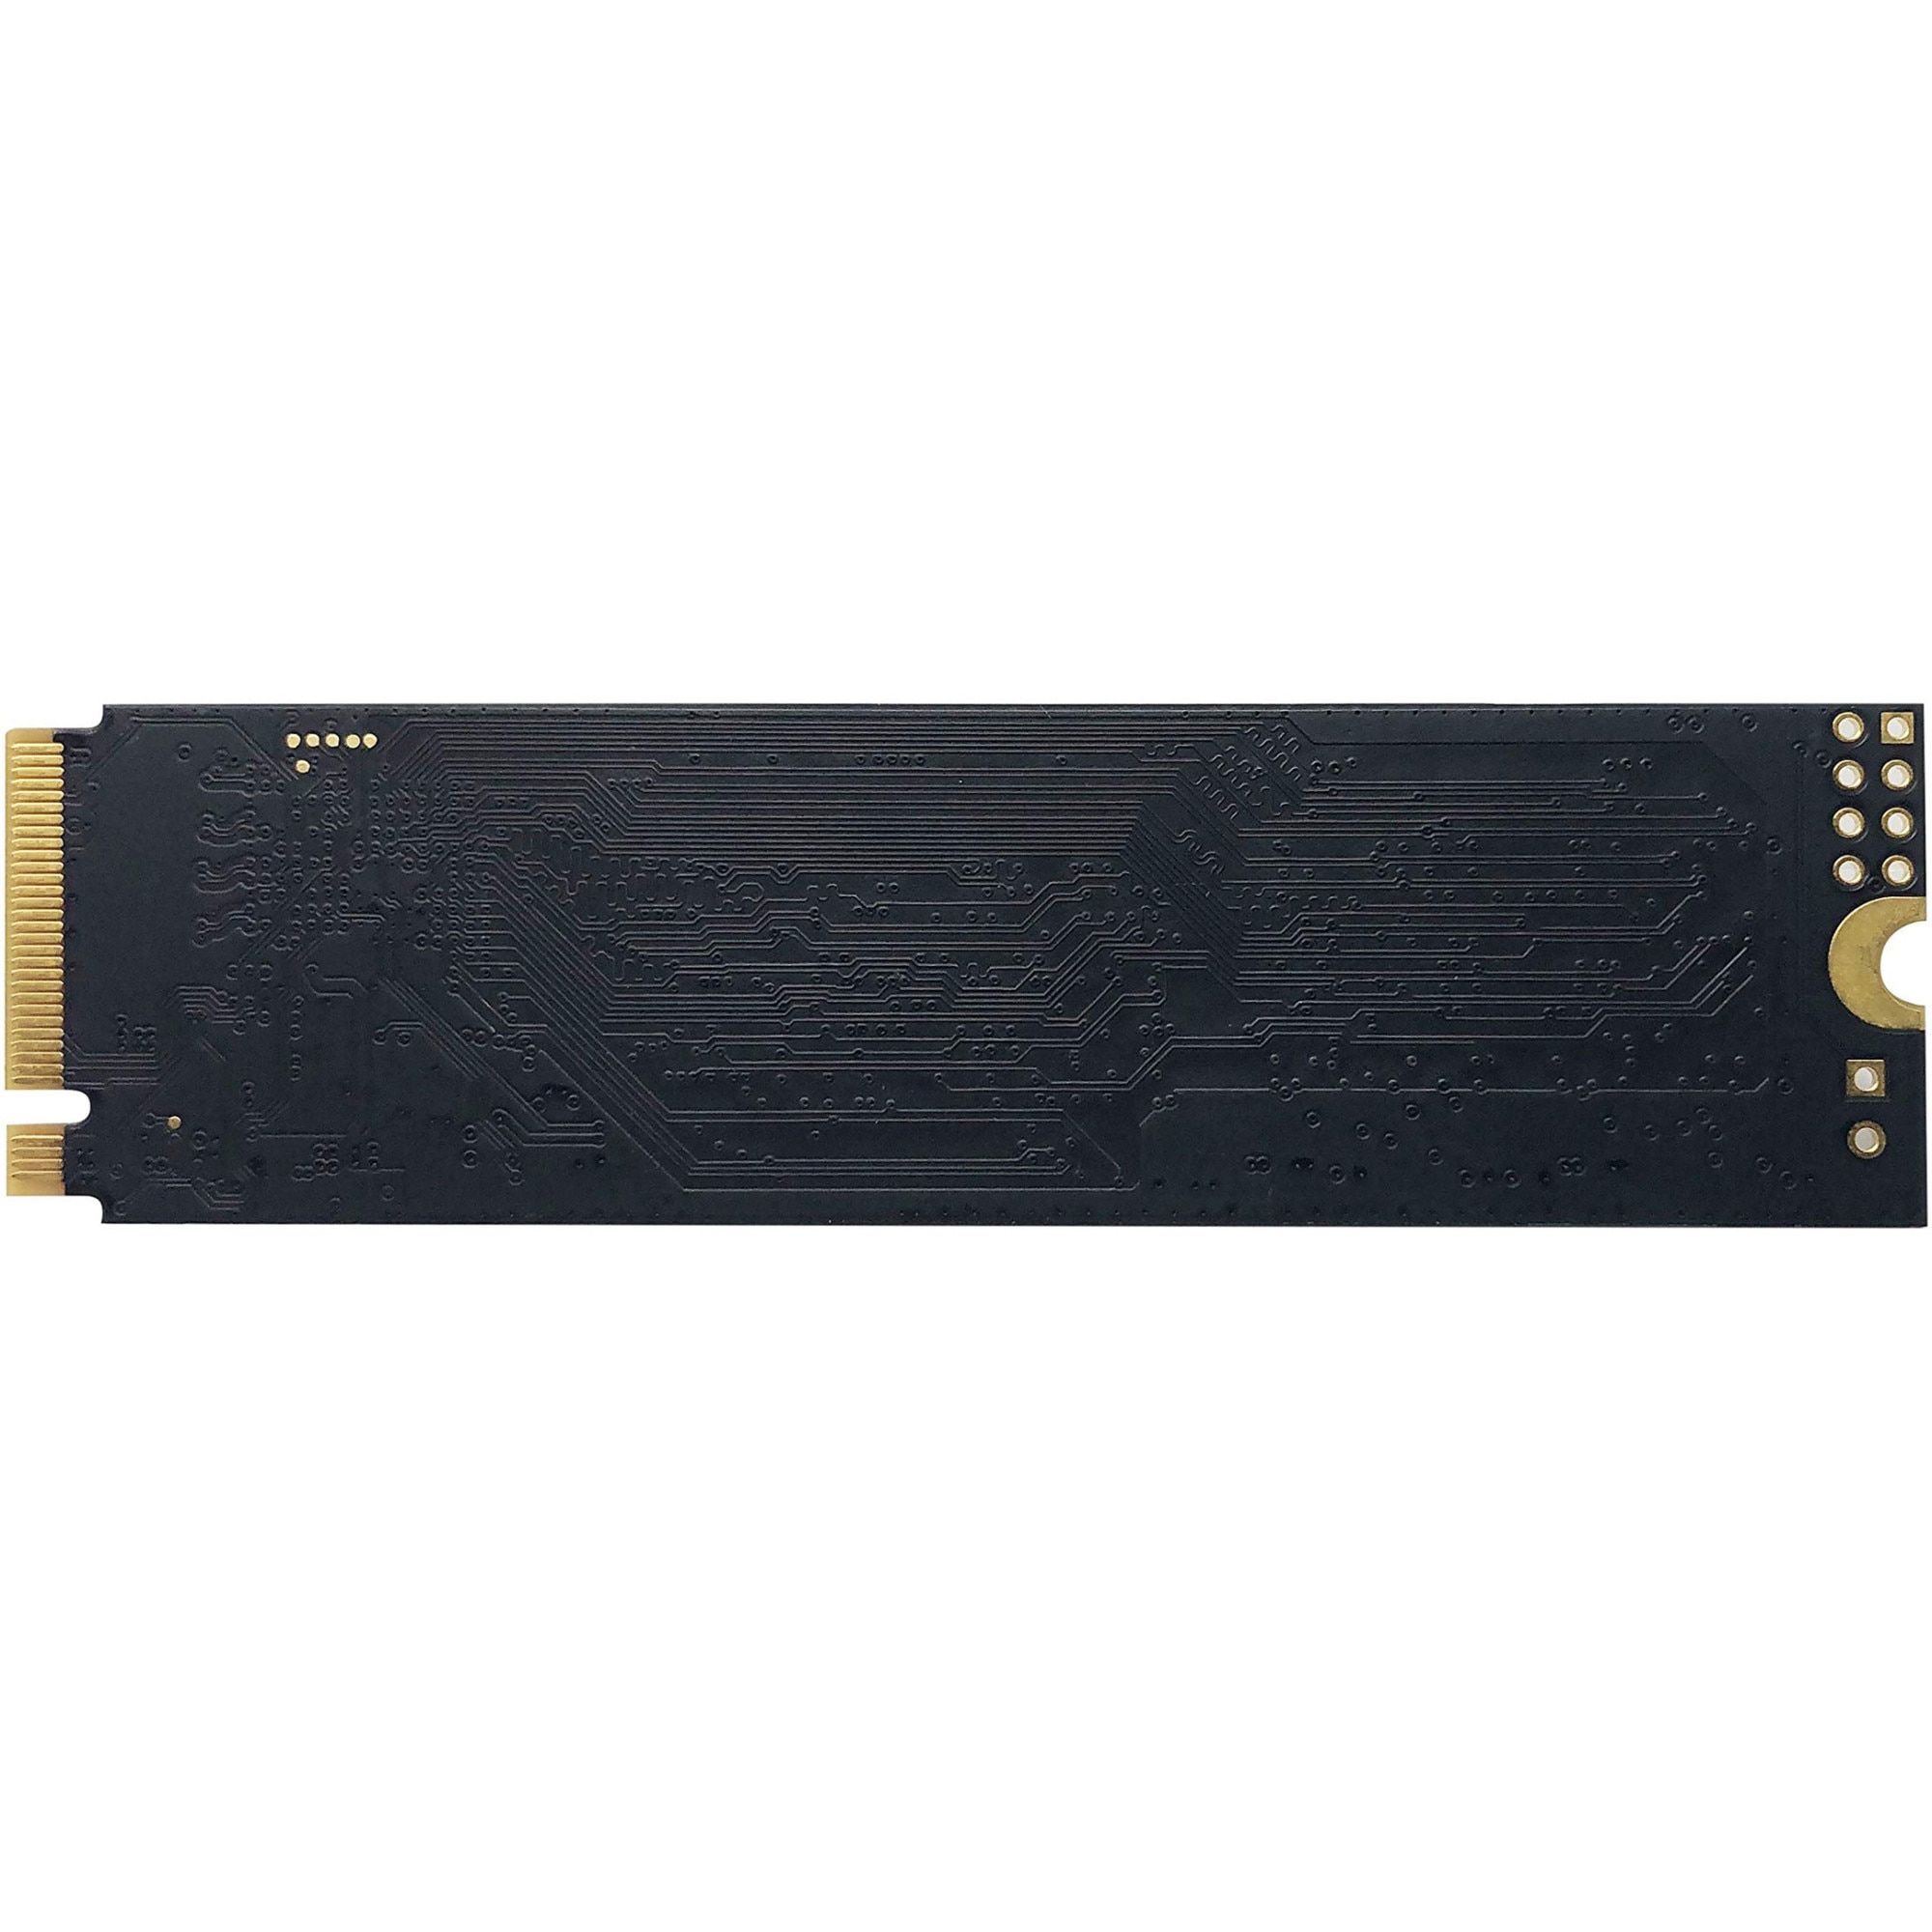 PATRIOT P300 1TB M2 2280 PCIe SSD_4